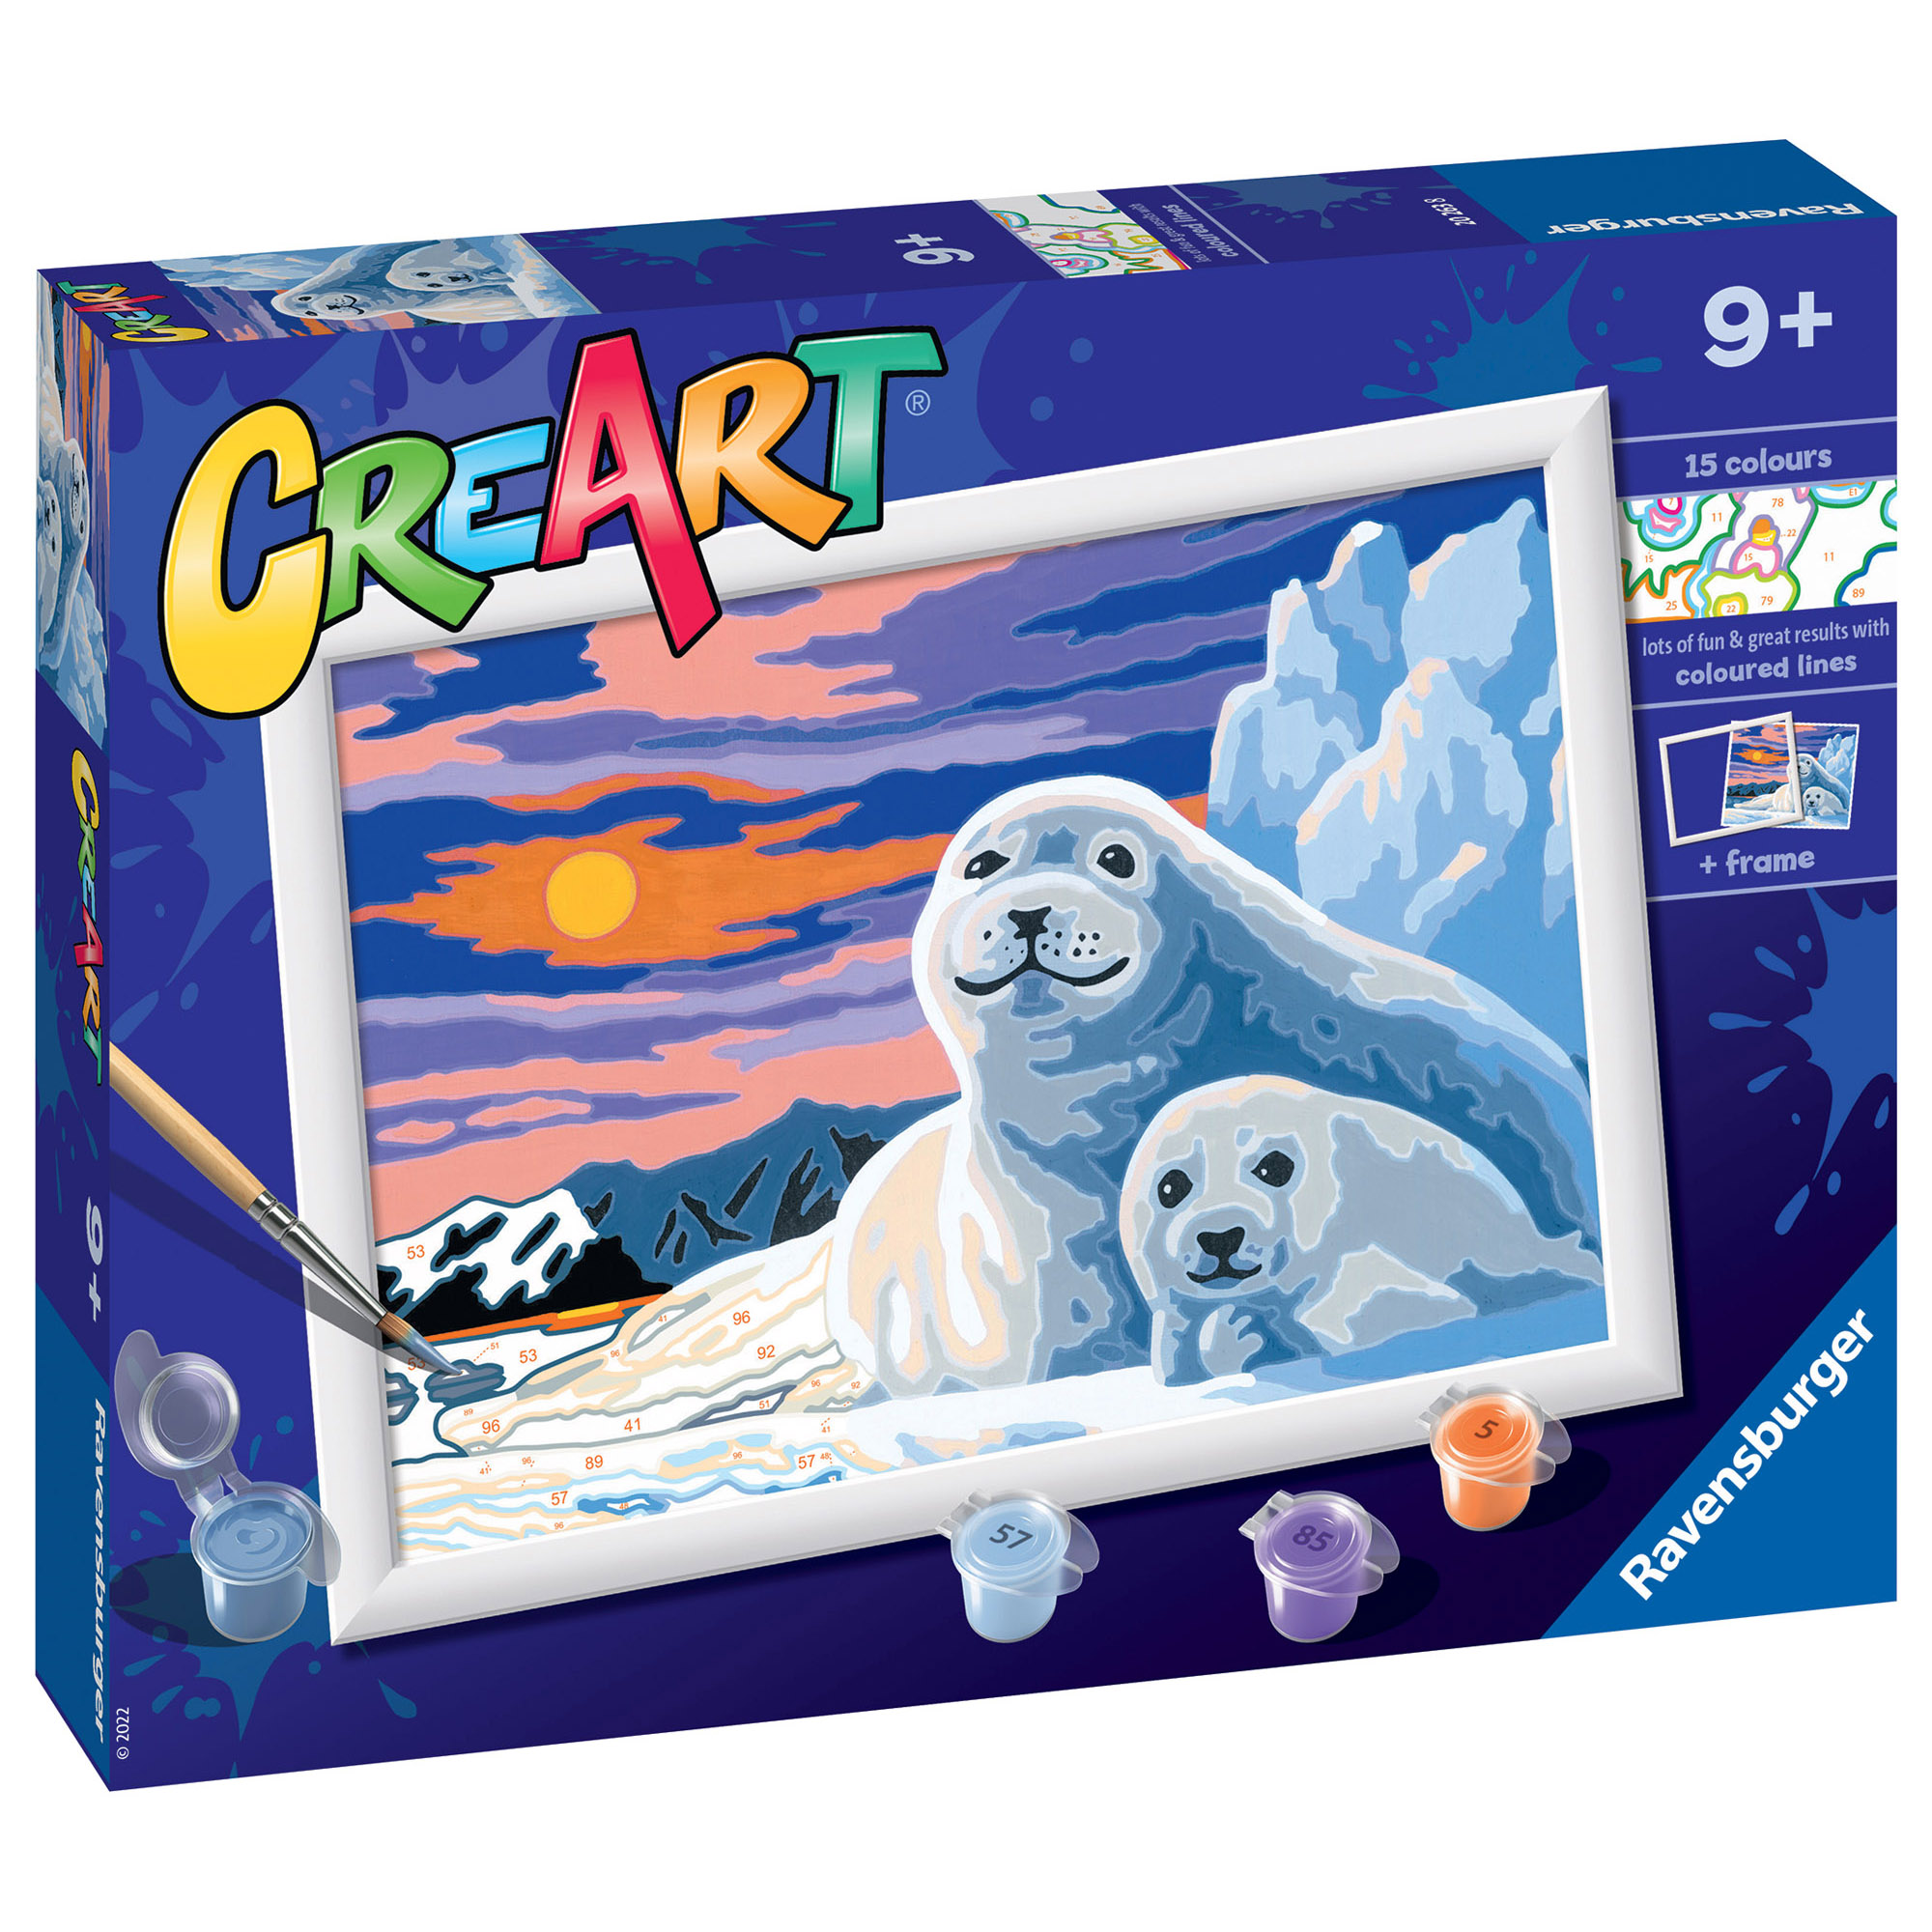 Ravensburger - creart serie d: foche sul ghiaccio, kit per dipingere con i numeri, contiene una tavola prestampata, pennello, colori e accessori, gioco creativo per bambini 9+ anni - CREART